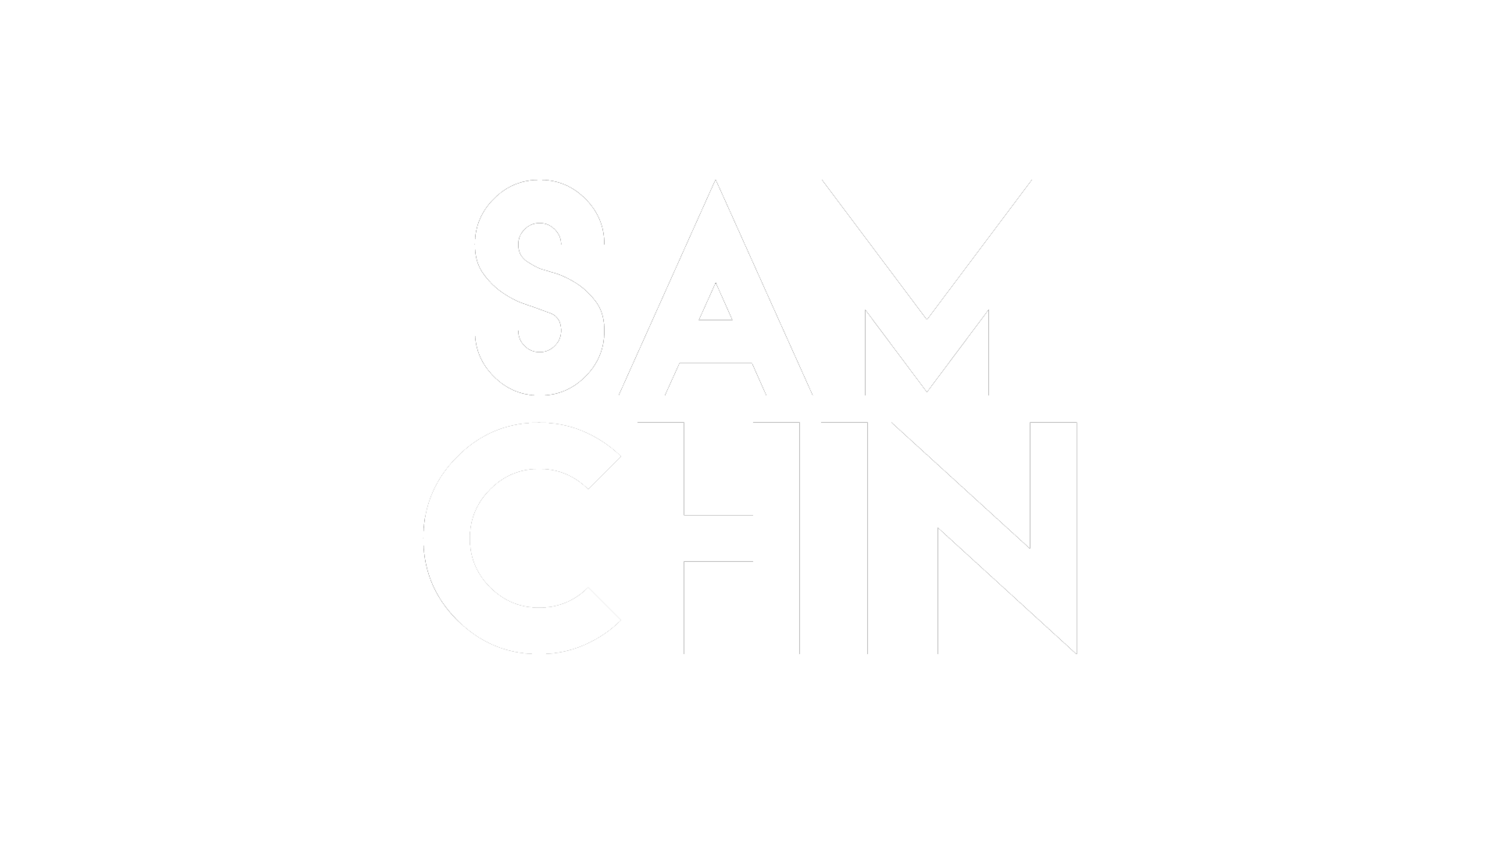 SAM CHIN